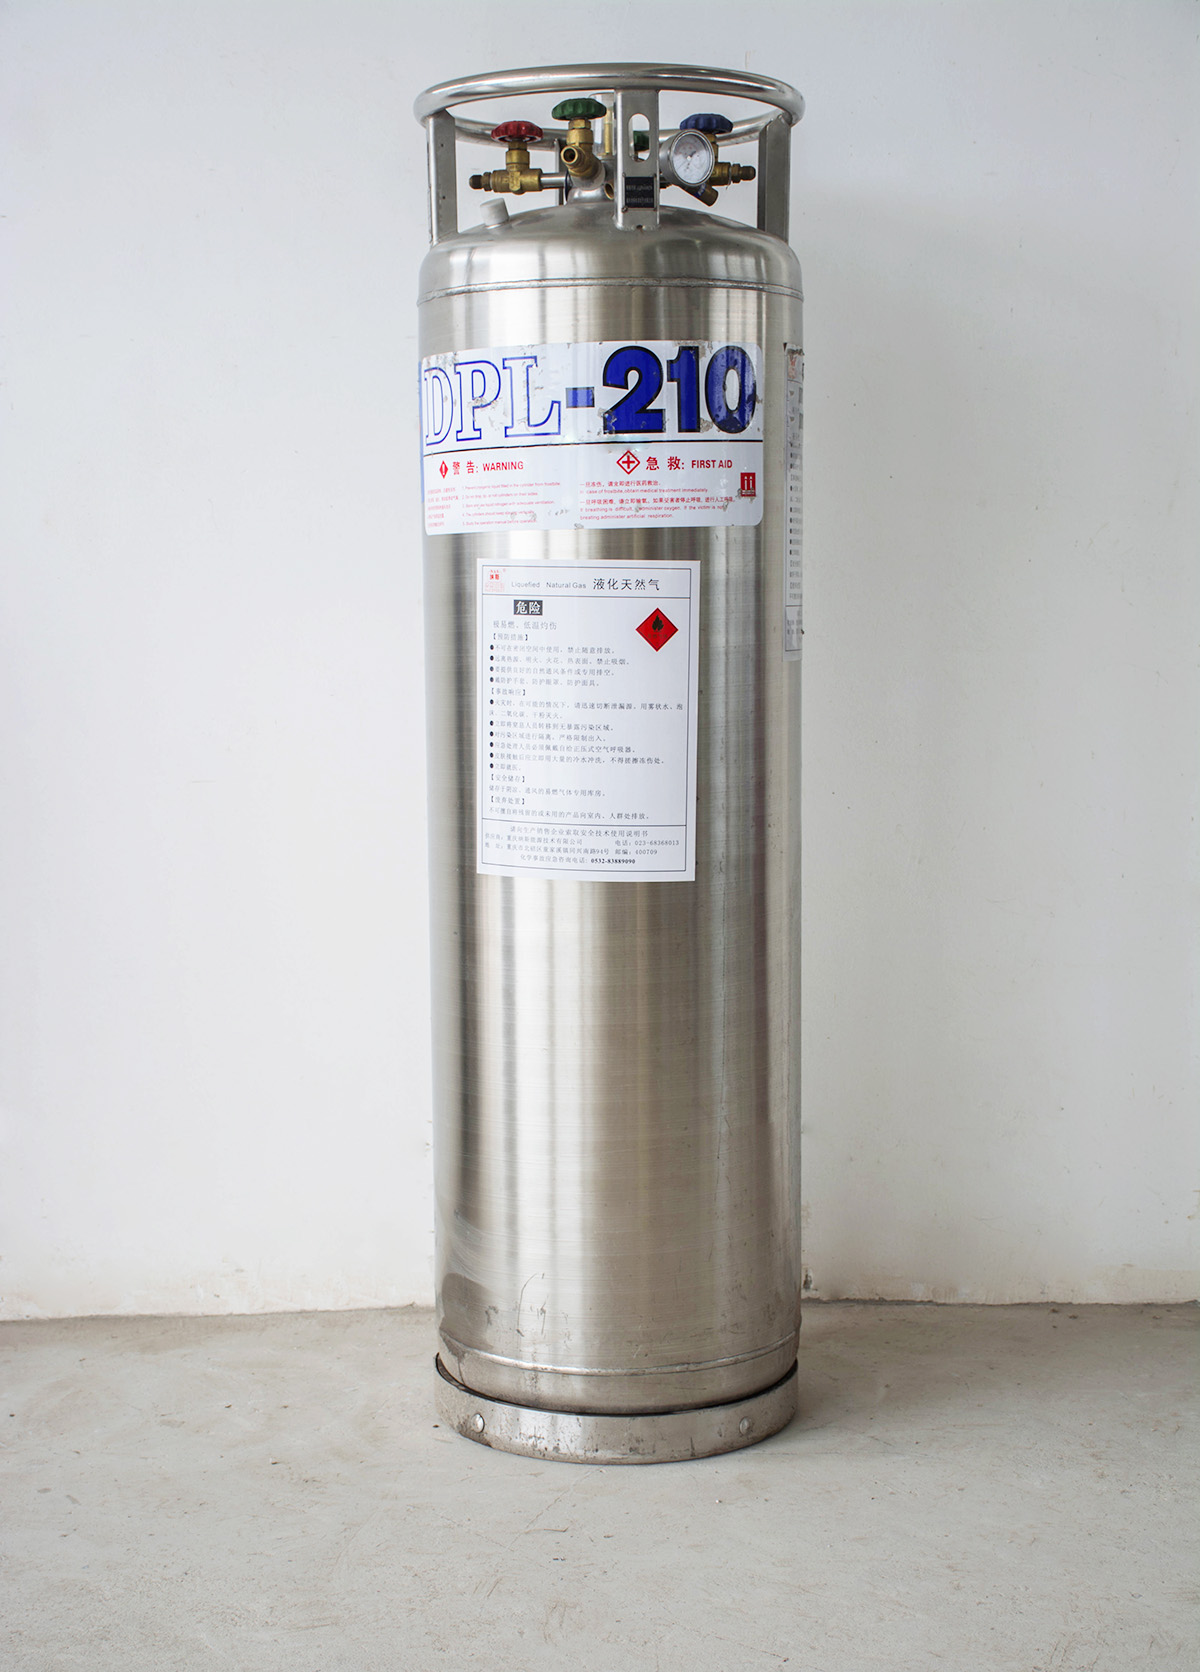 杜瓦罐装210L液体天然气